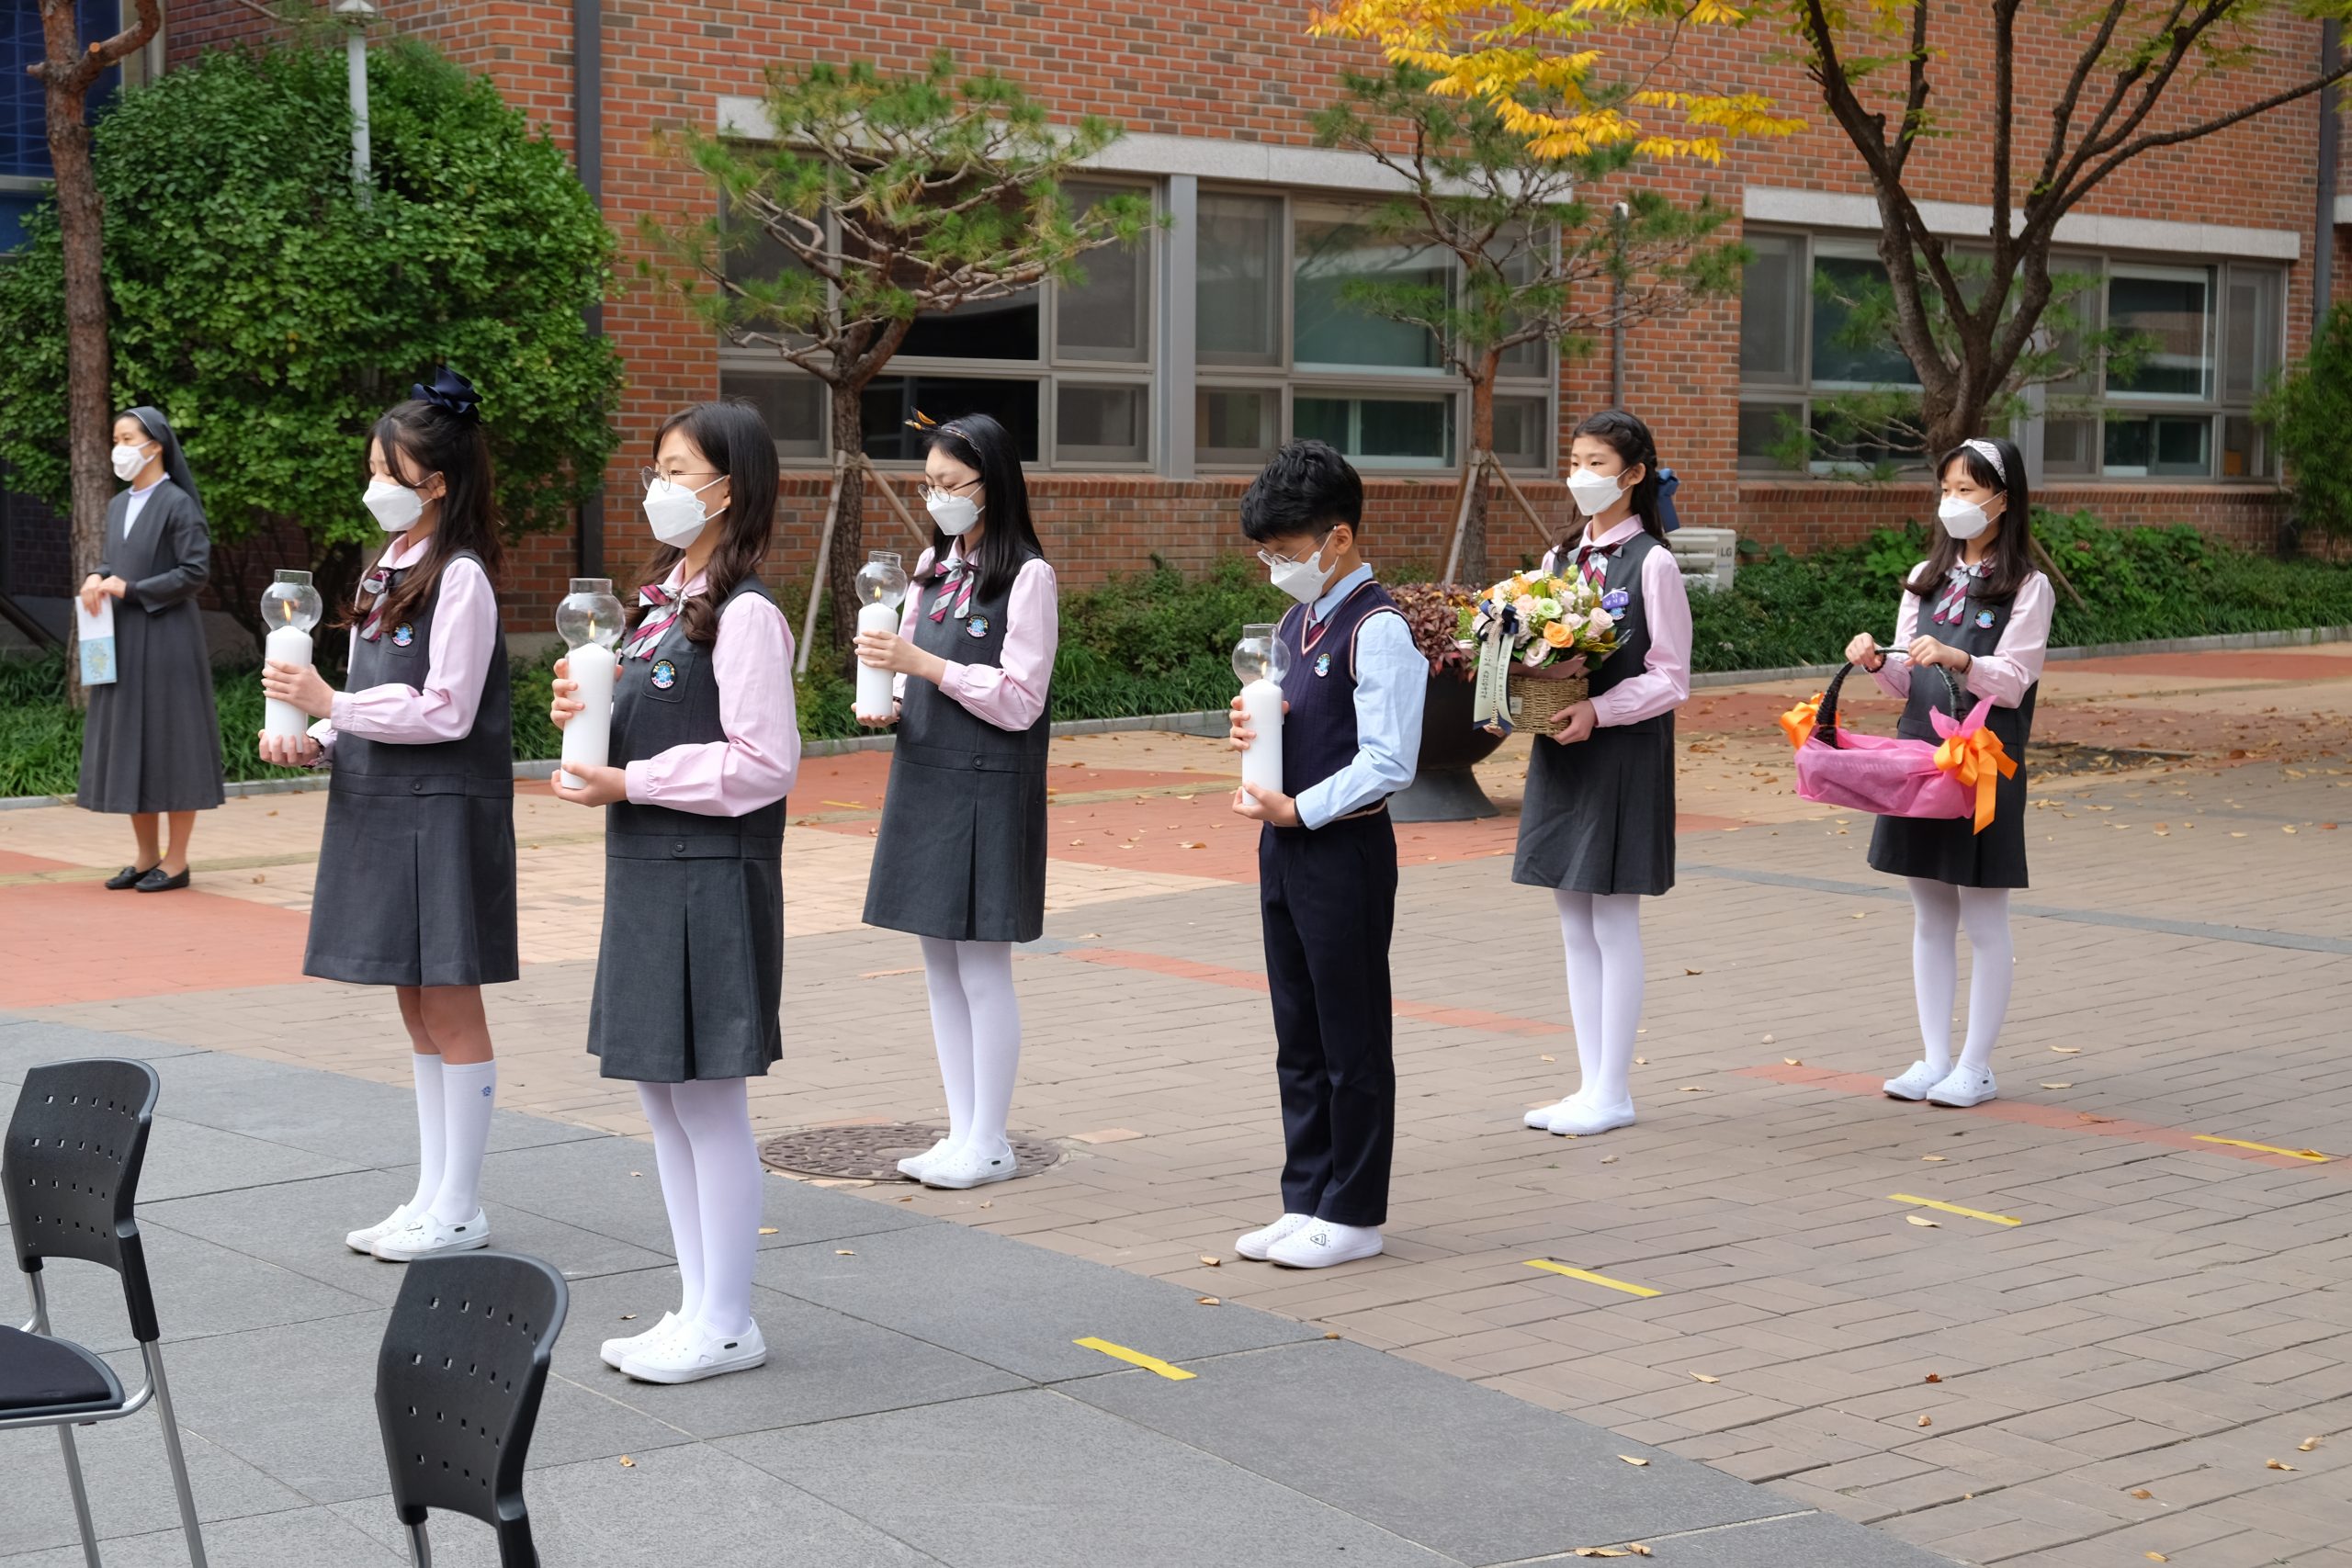 Cirkevná základná škola v Soule, Južná Kórea